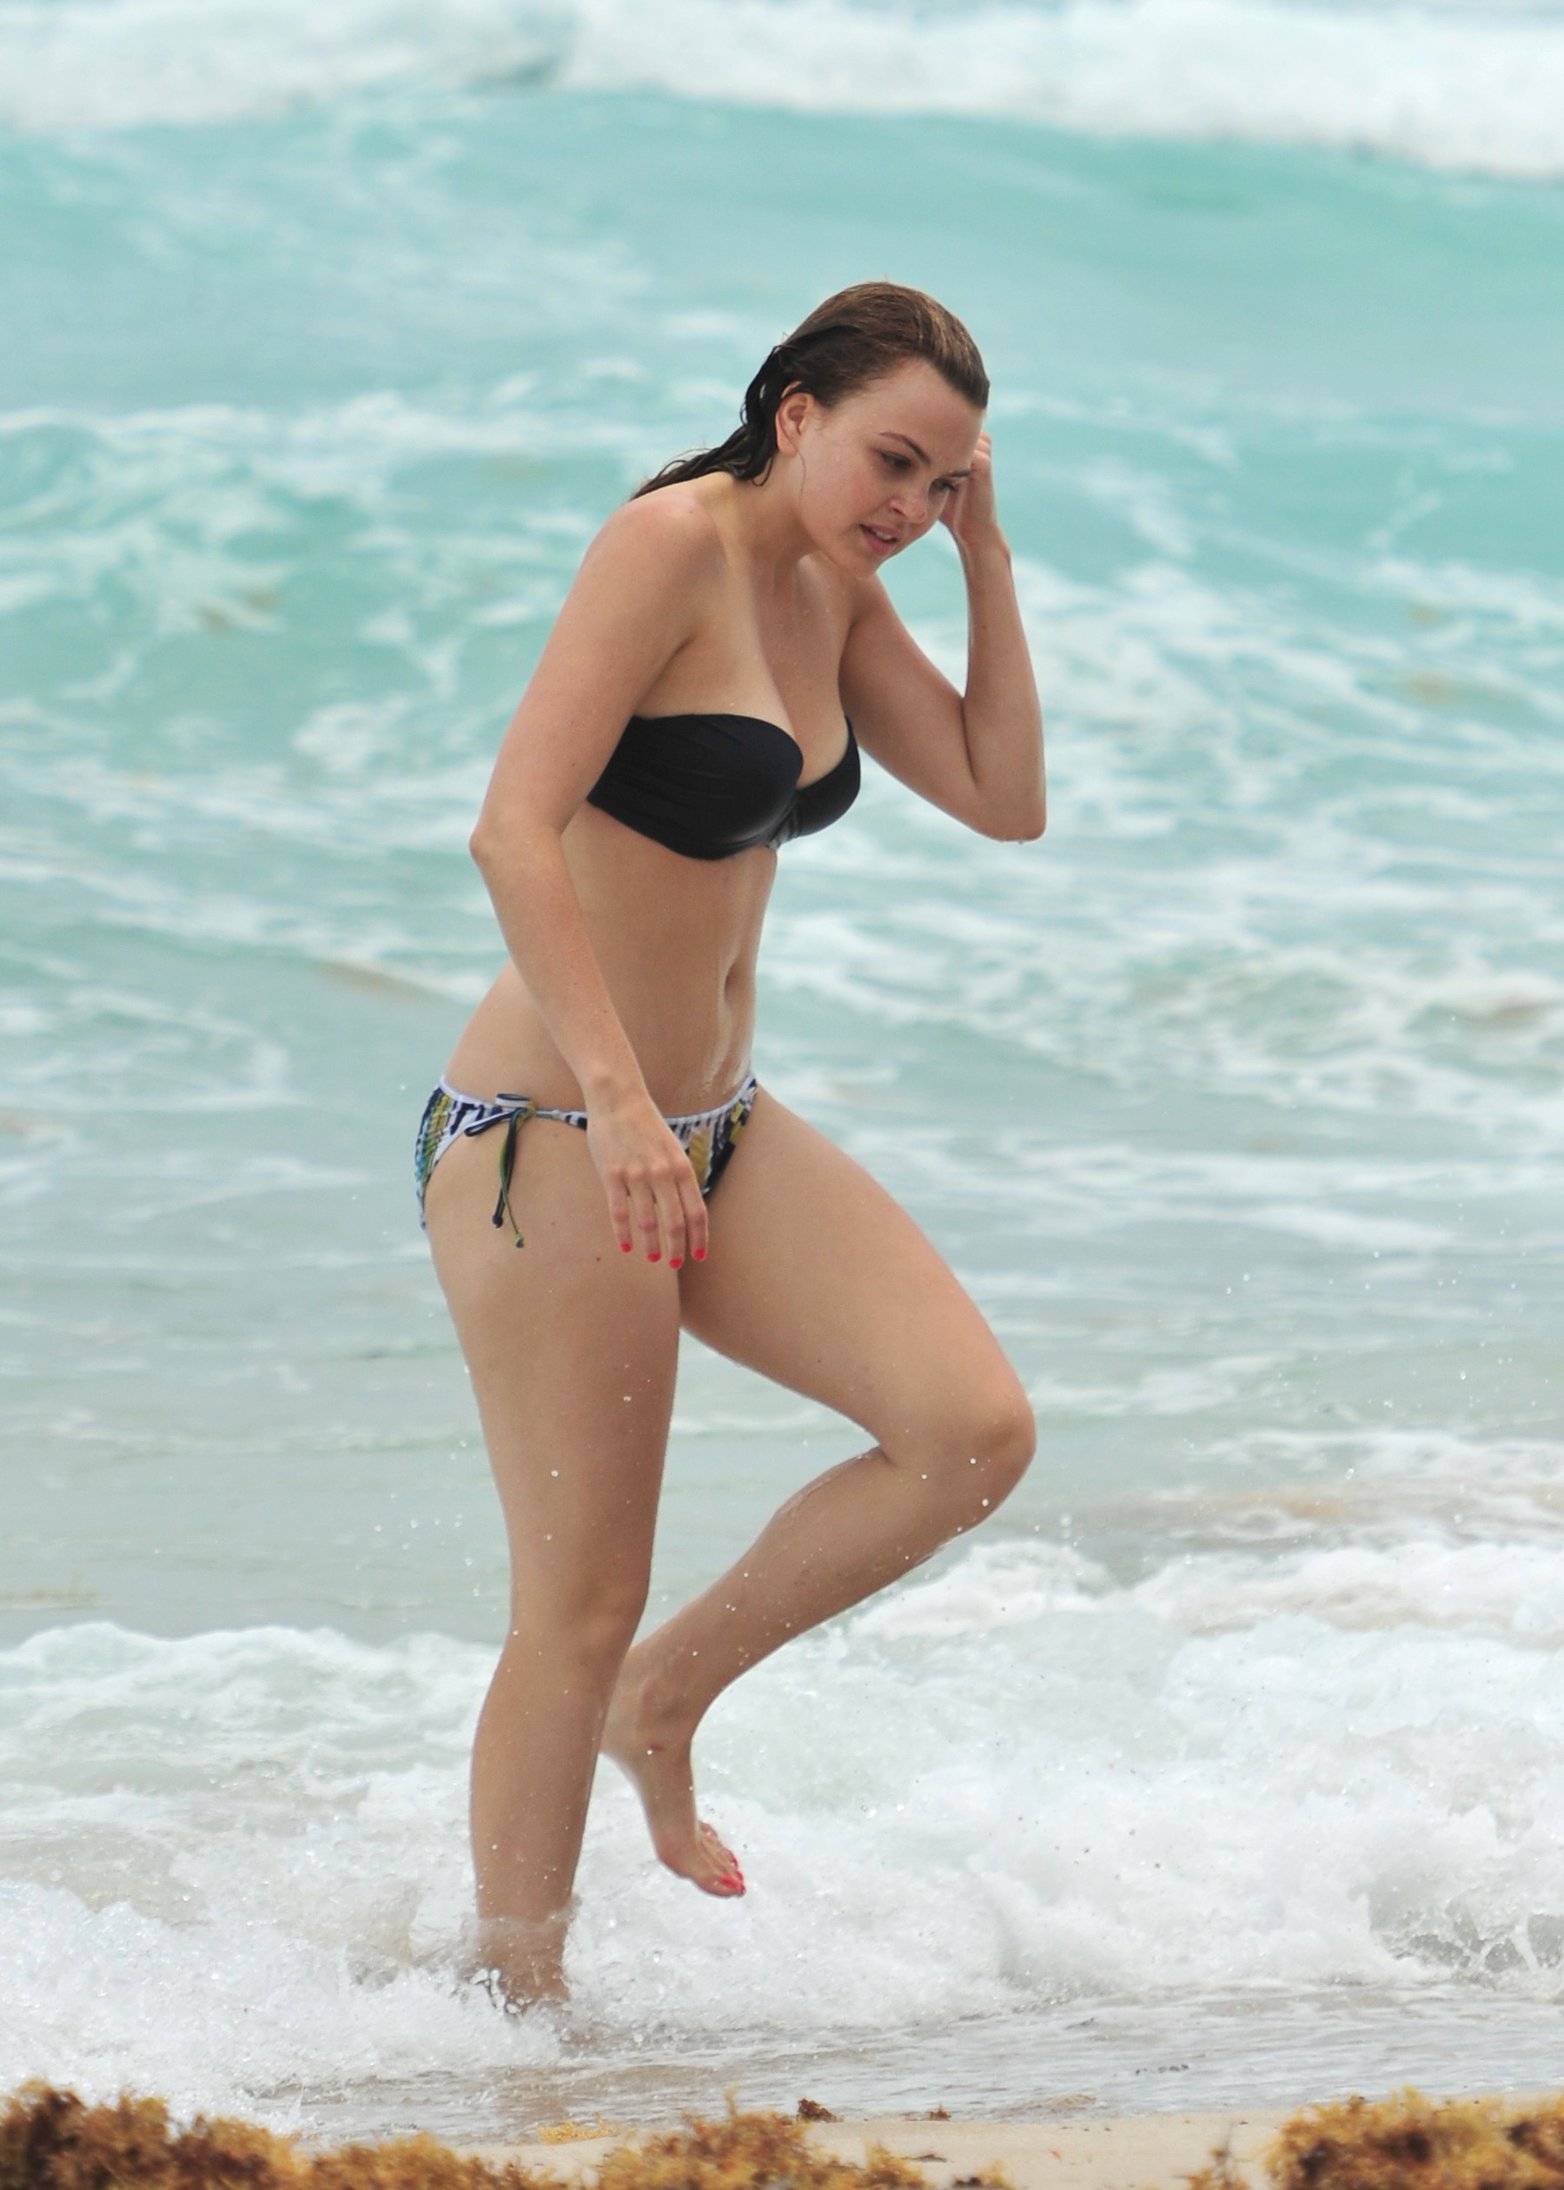 Aimee Teegarden Bikini Pictures. 